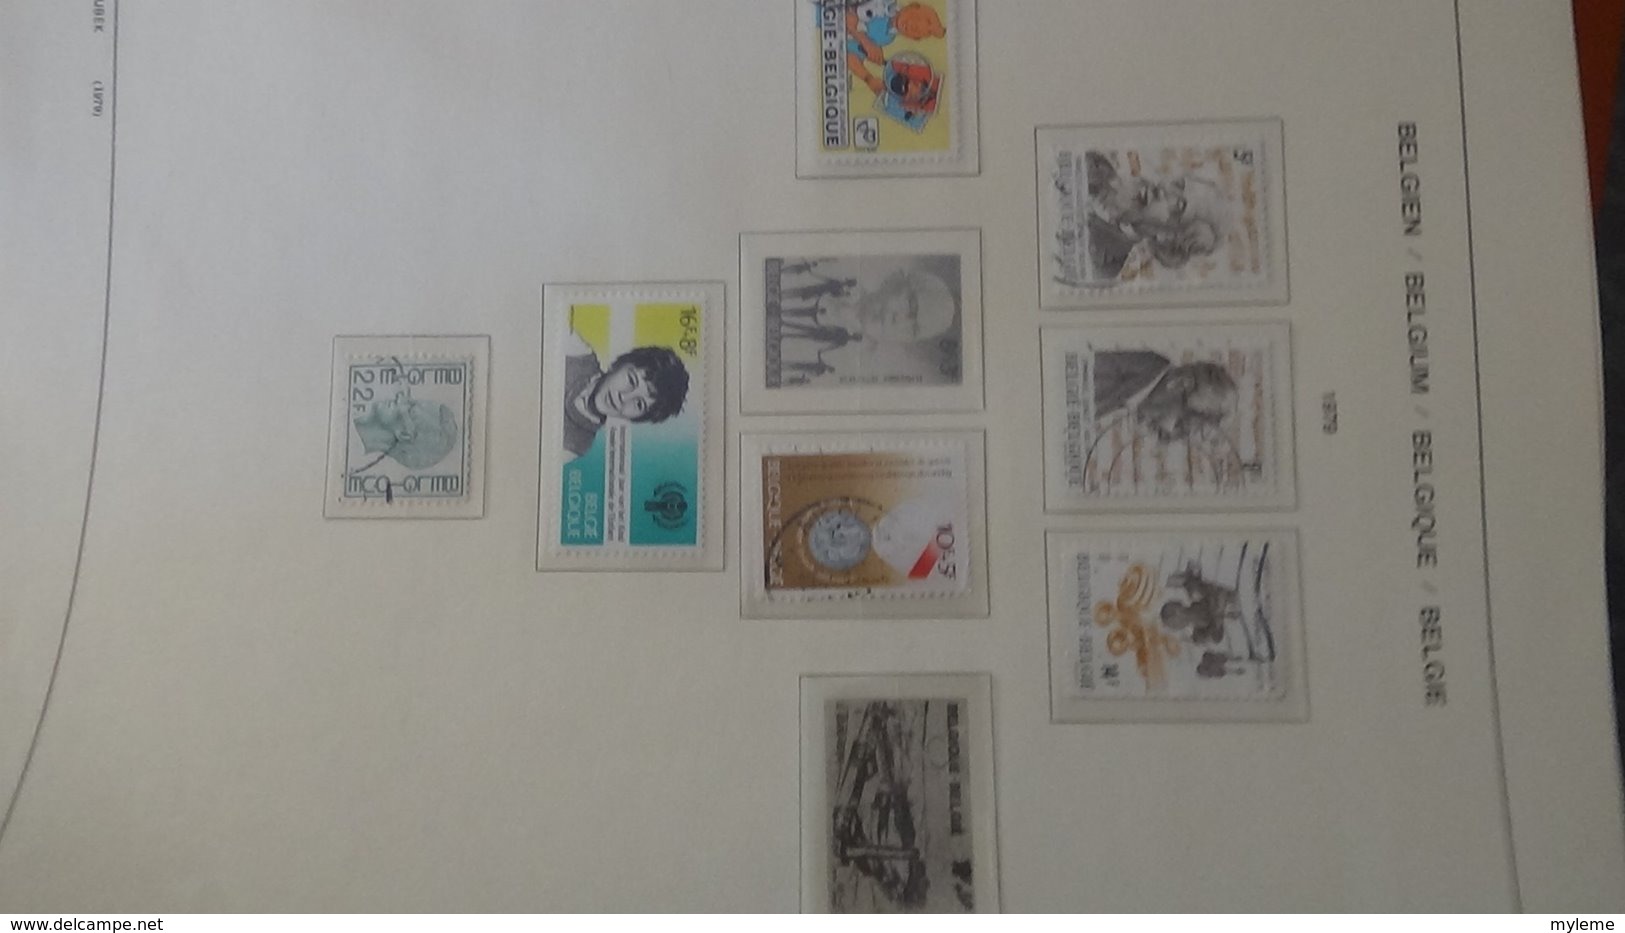 Collection timbres de BELGIQUE Idéal pour thématiques A saisir !!!